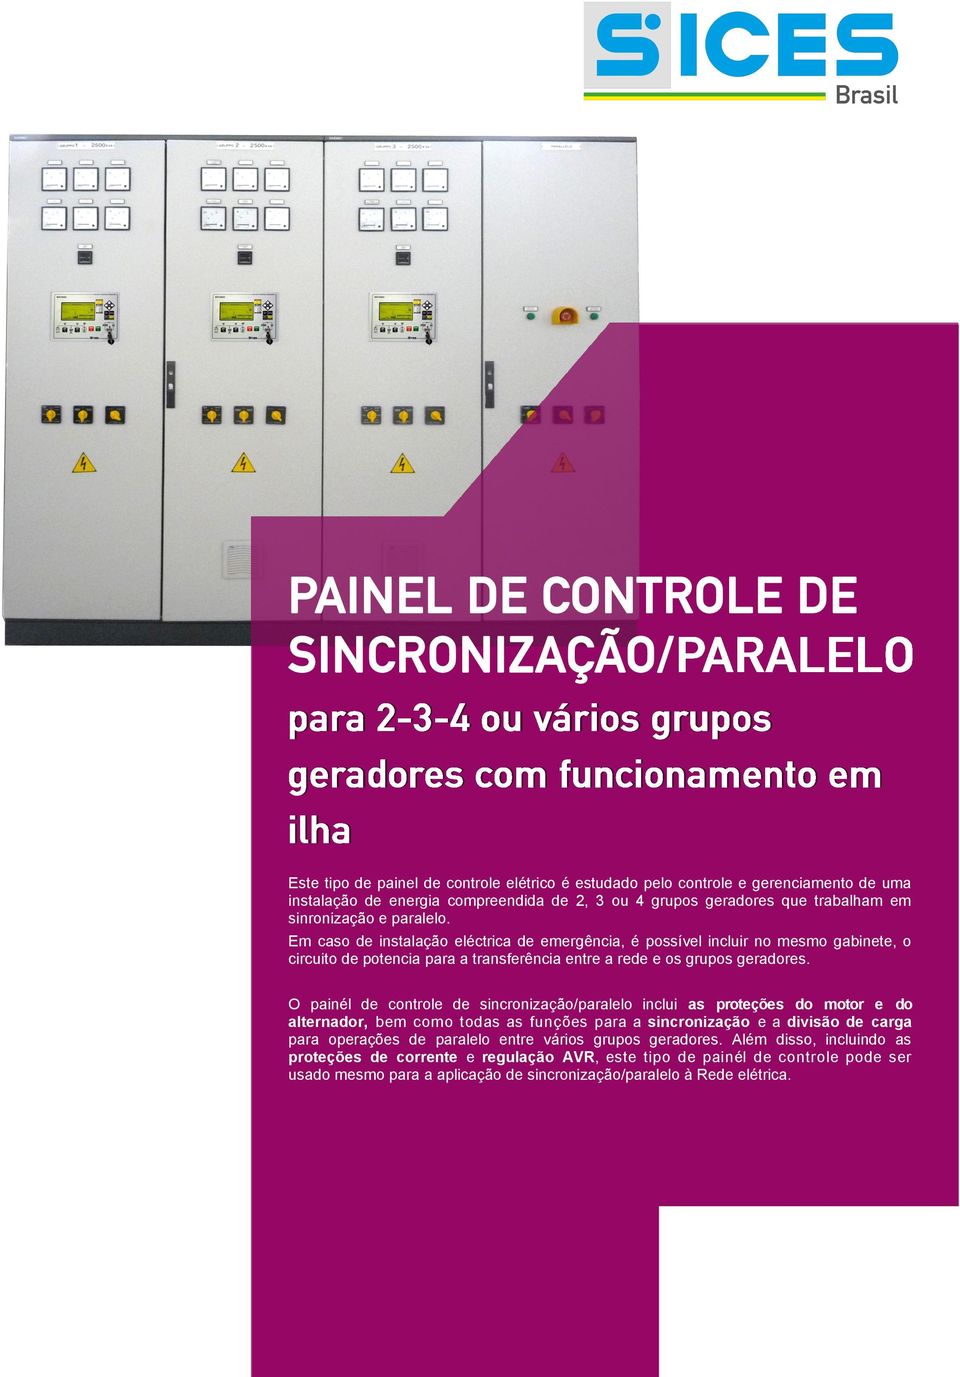 O painél de controle de sincronização/paralelo inclui as proteções do motor e do alternador, bem como todas as funções para a sincronização e a divisão de carga para operações de paralelo